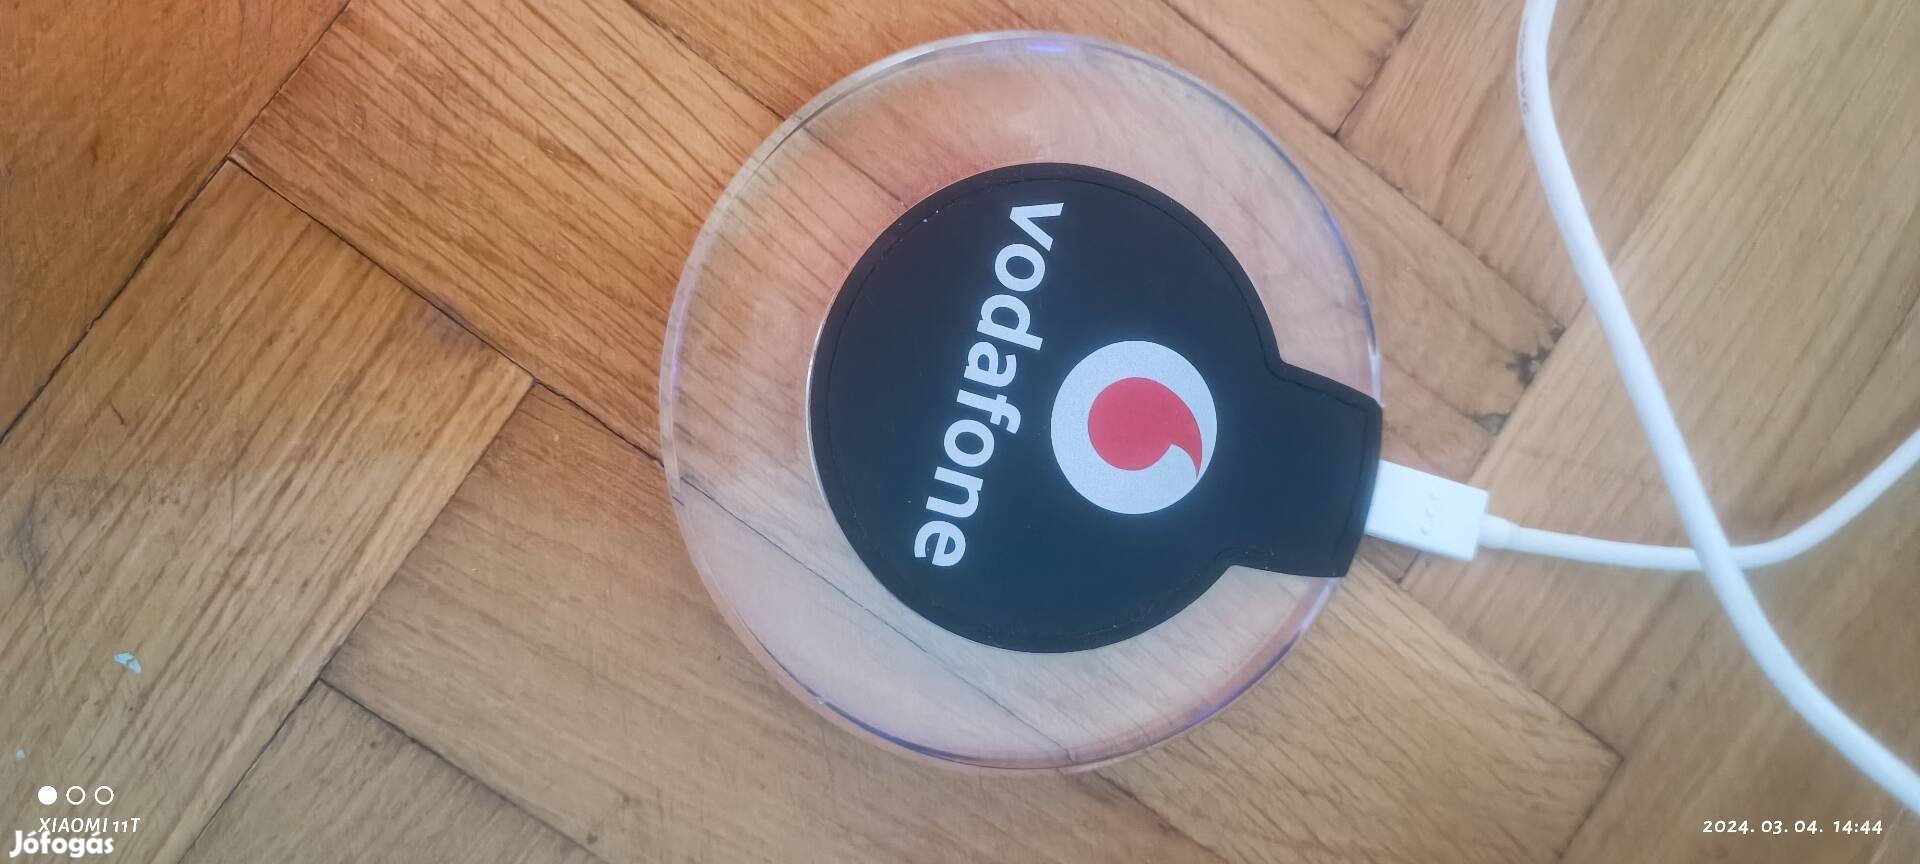 Vodafone mo9310 telefon vezeték nélküli töltő. 